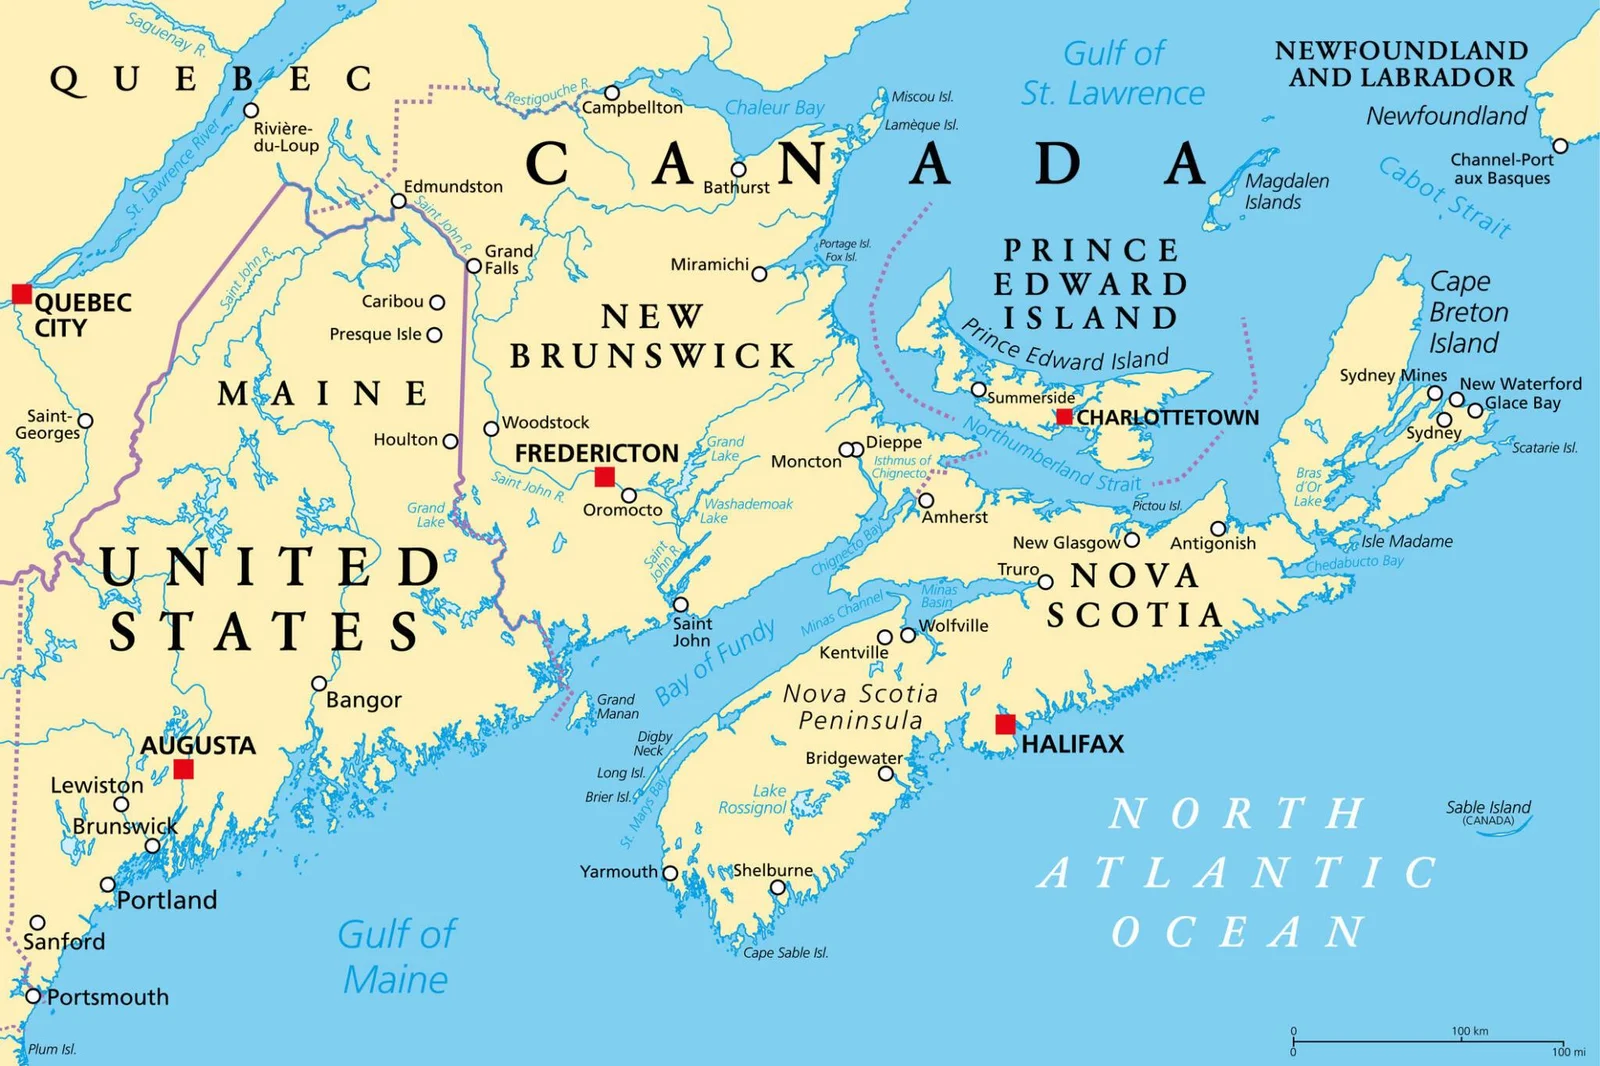 Programme d'immigration au Canada Atlantique ( PICA )